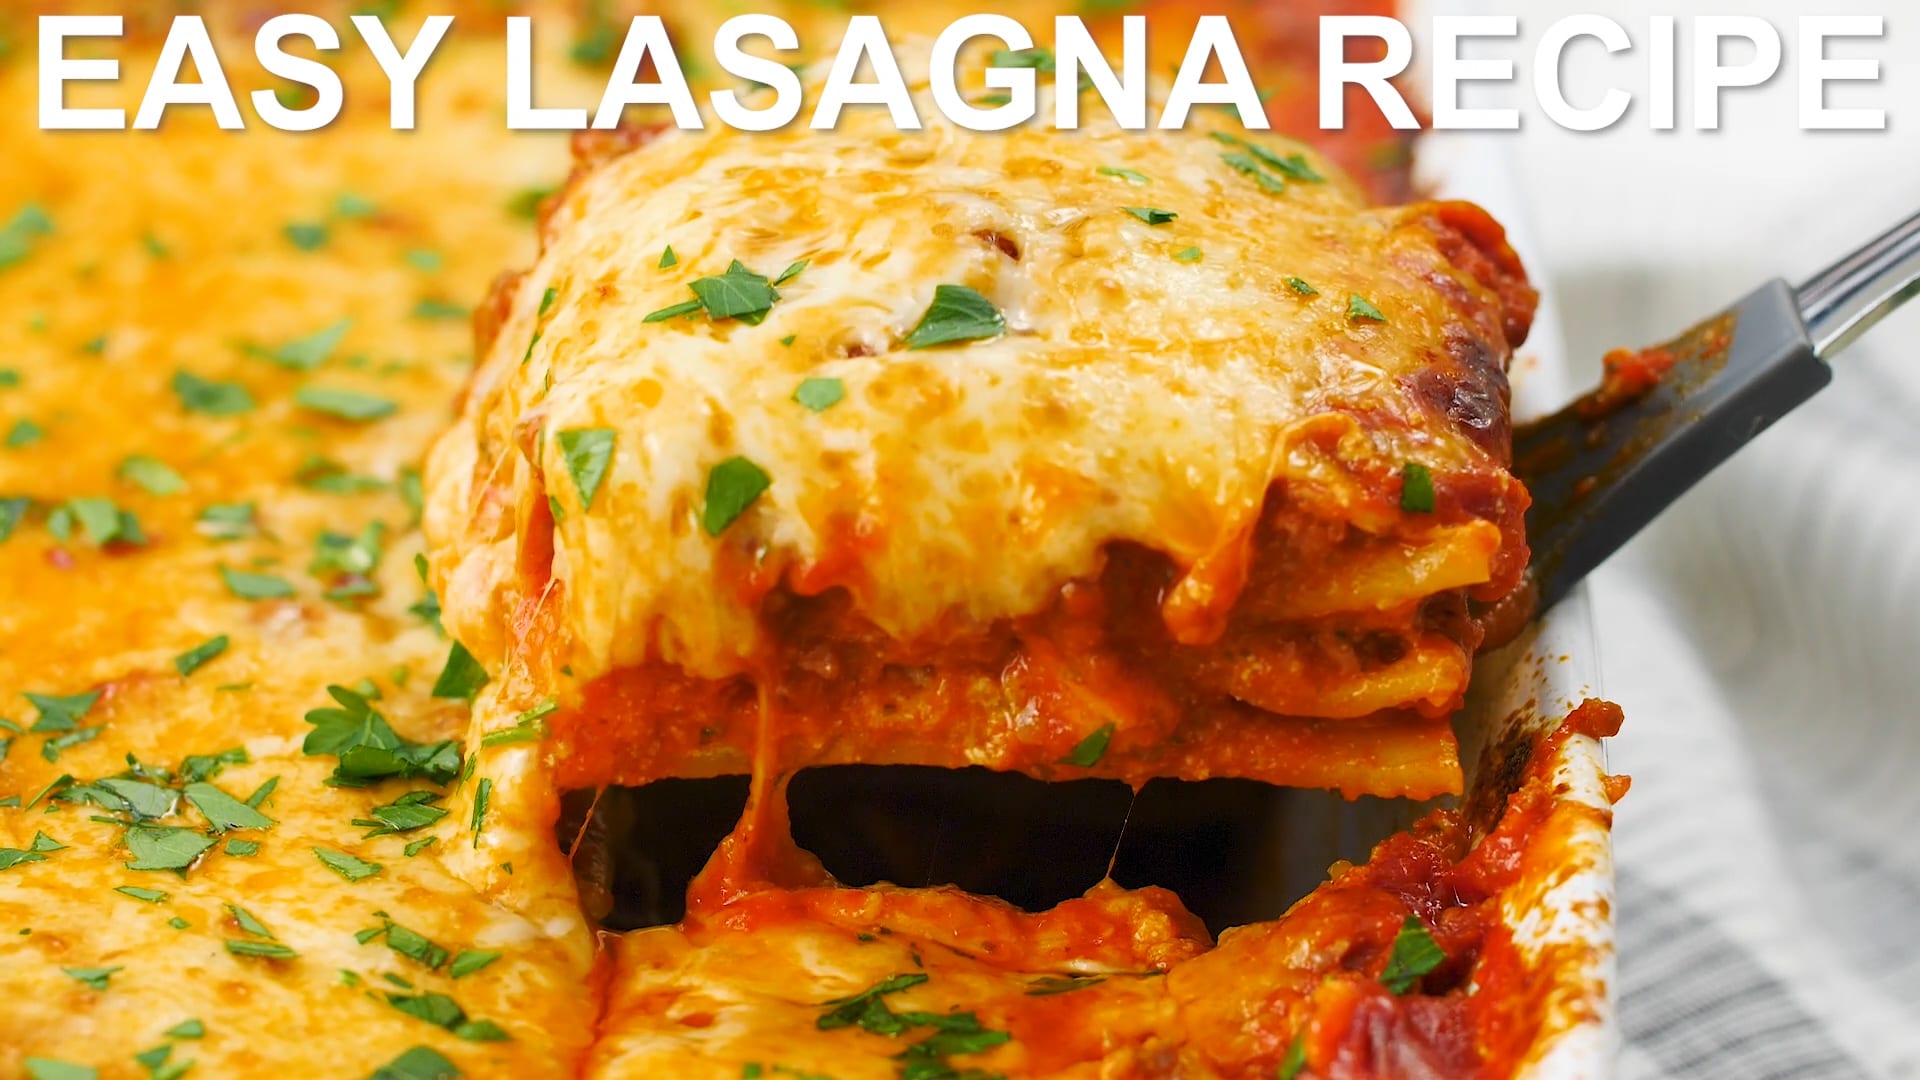 Easy Lasagna Recipe - The Cozy Cook